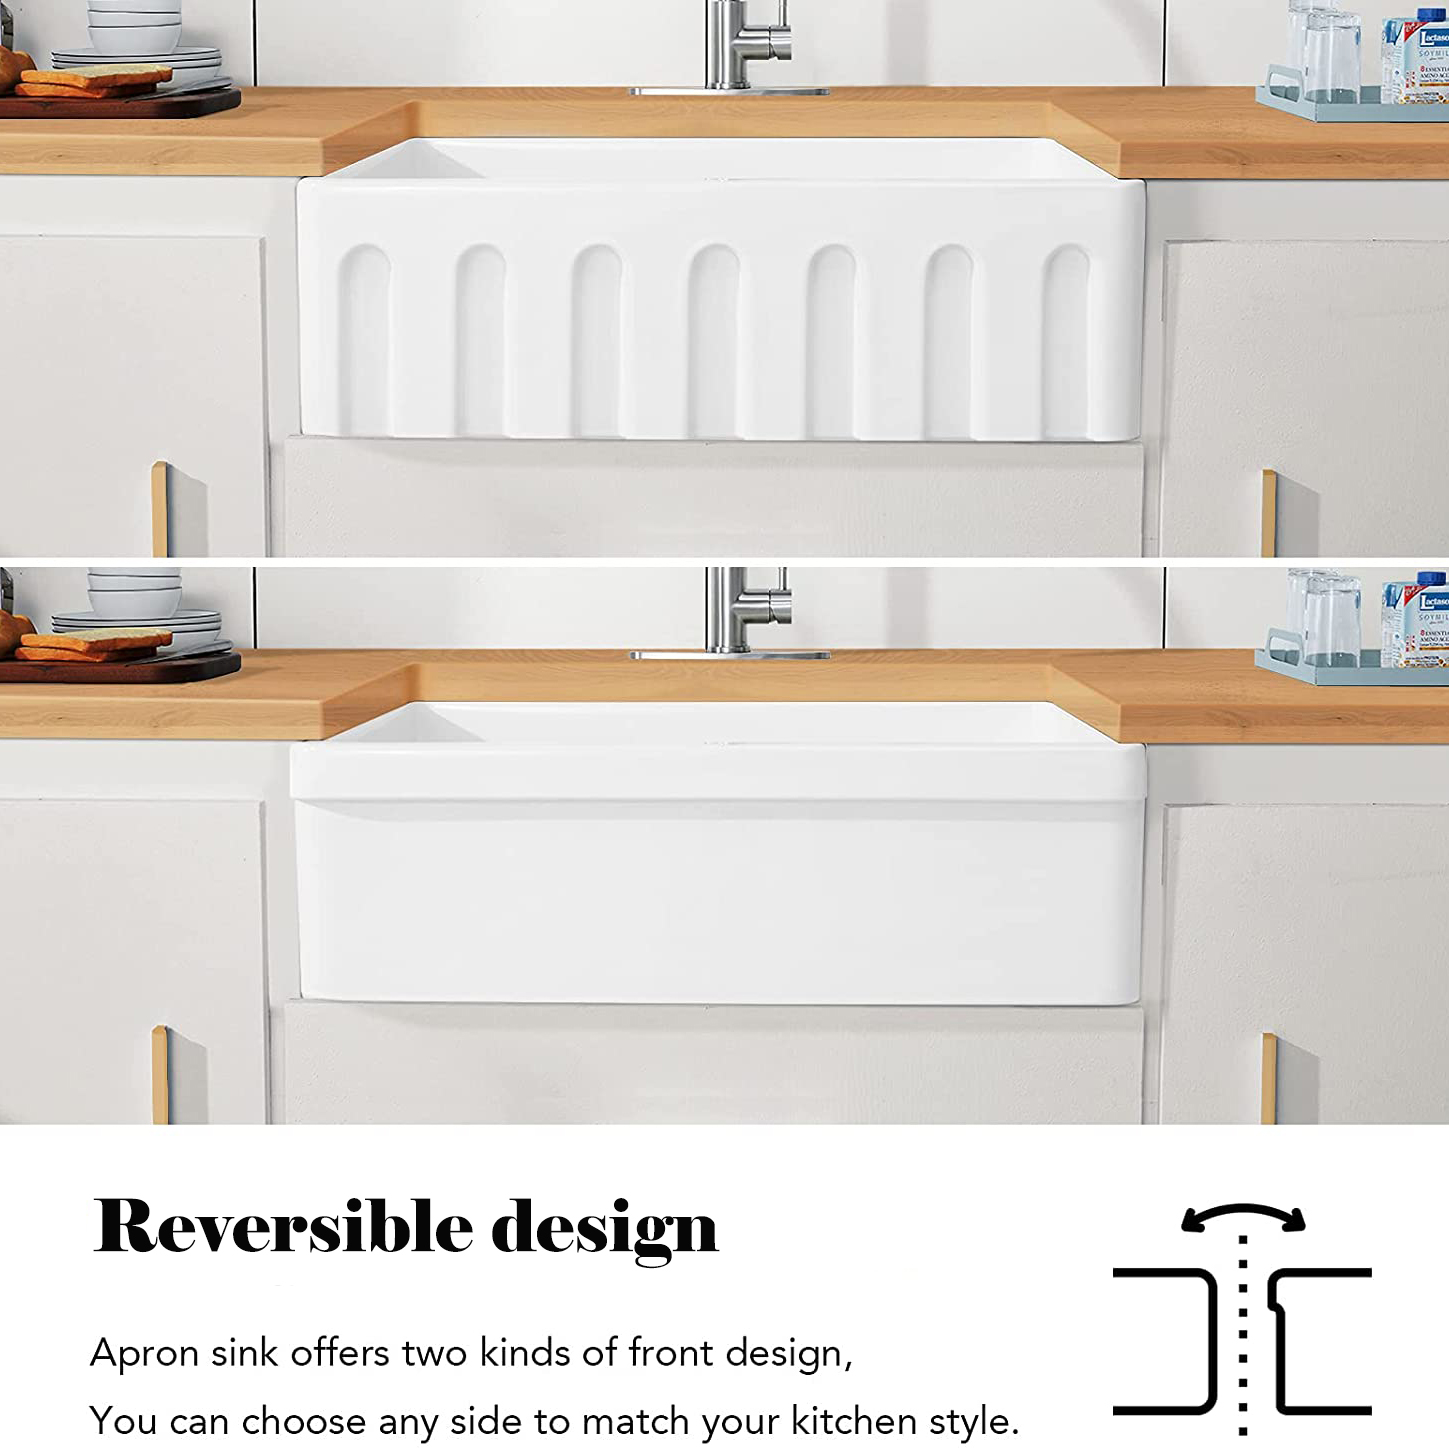 Lavello da cucina in ceramica refrattaria reversibile rettangolare a vasca singola dal design unico, 76,2 x 50,8 cm, con filtro e griglia inferiore protettiva.